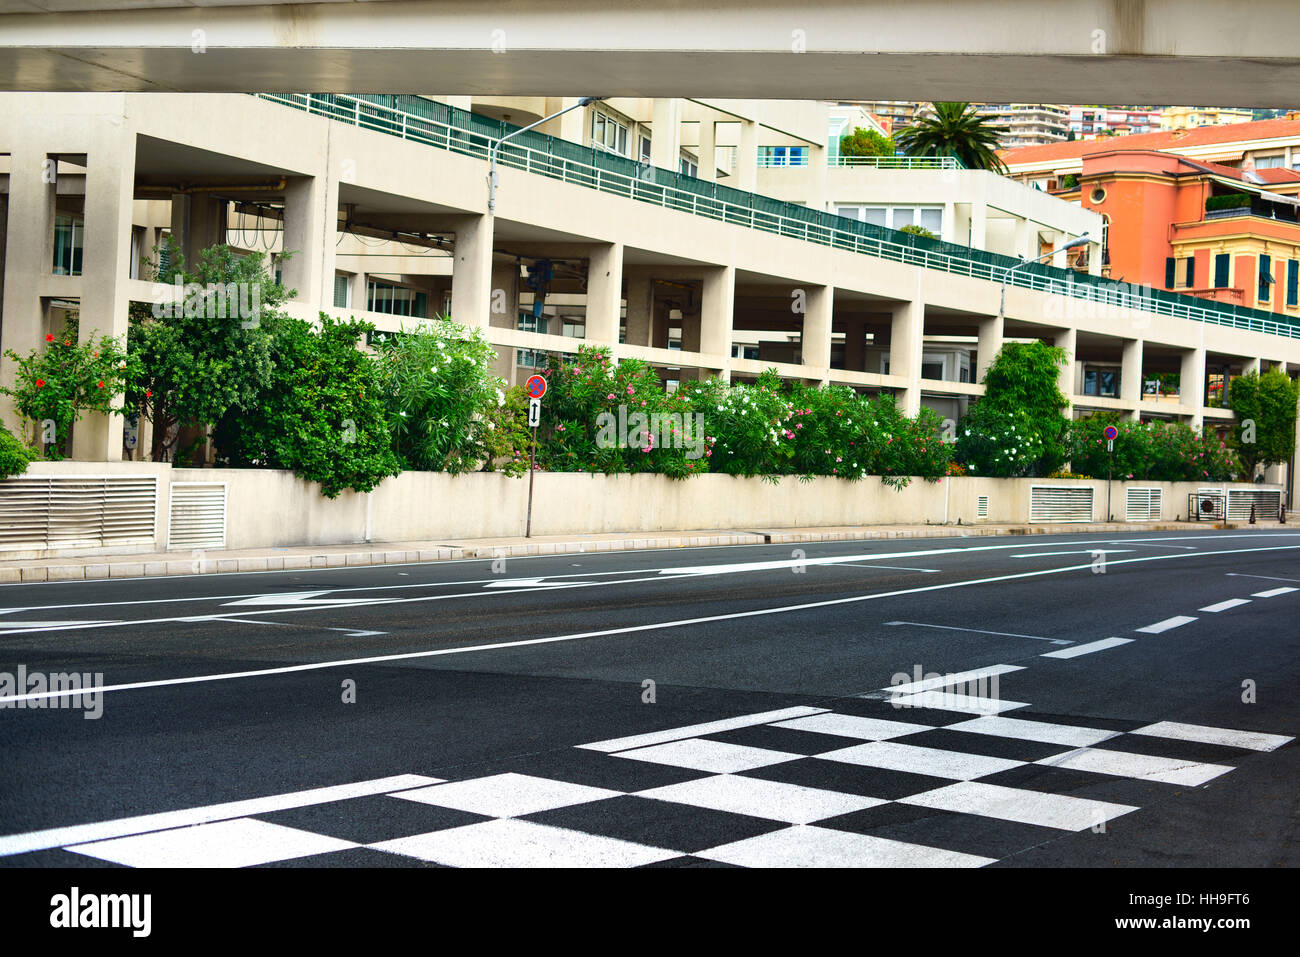 Raster und Pit Lane Asphalt auf Monaco Montecarlo Rennen Grand Prix Stadtkurs starten Stockfoto